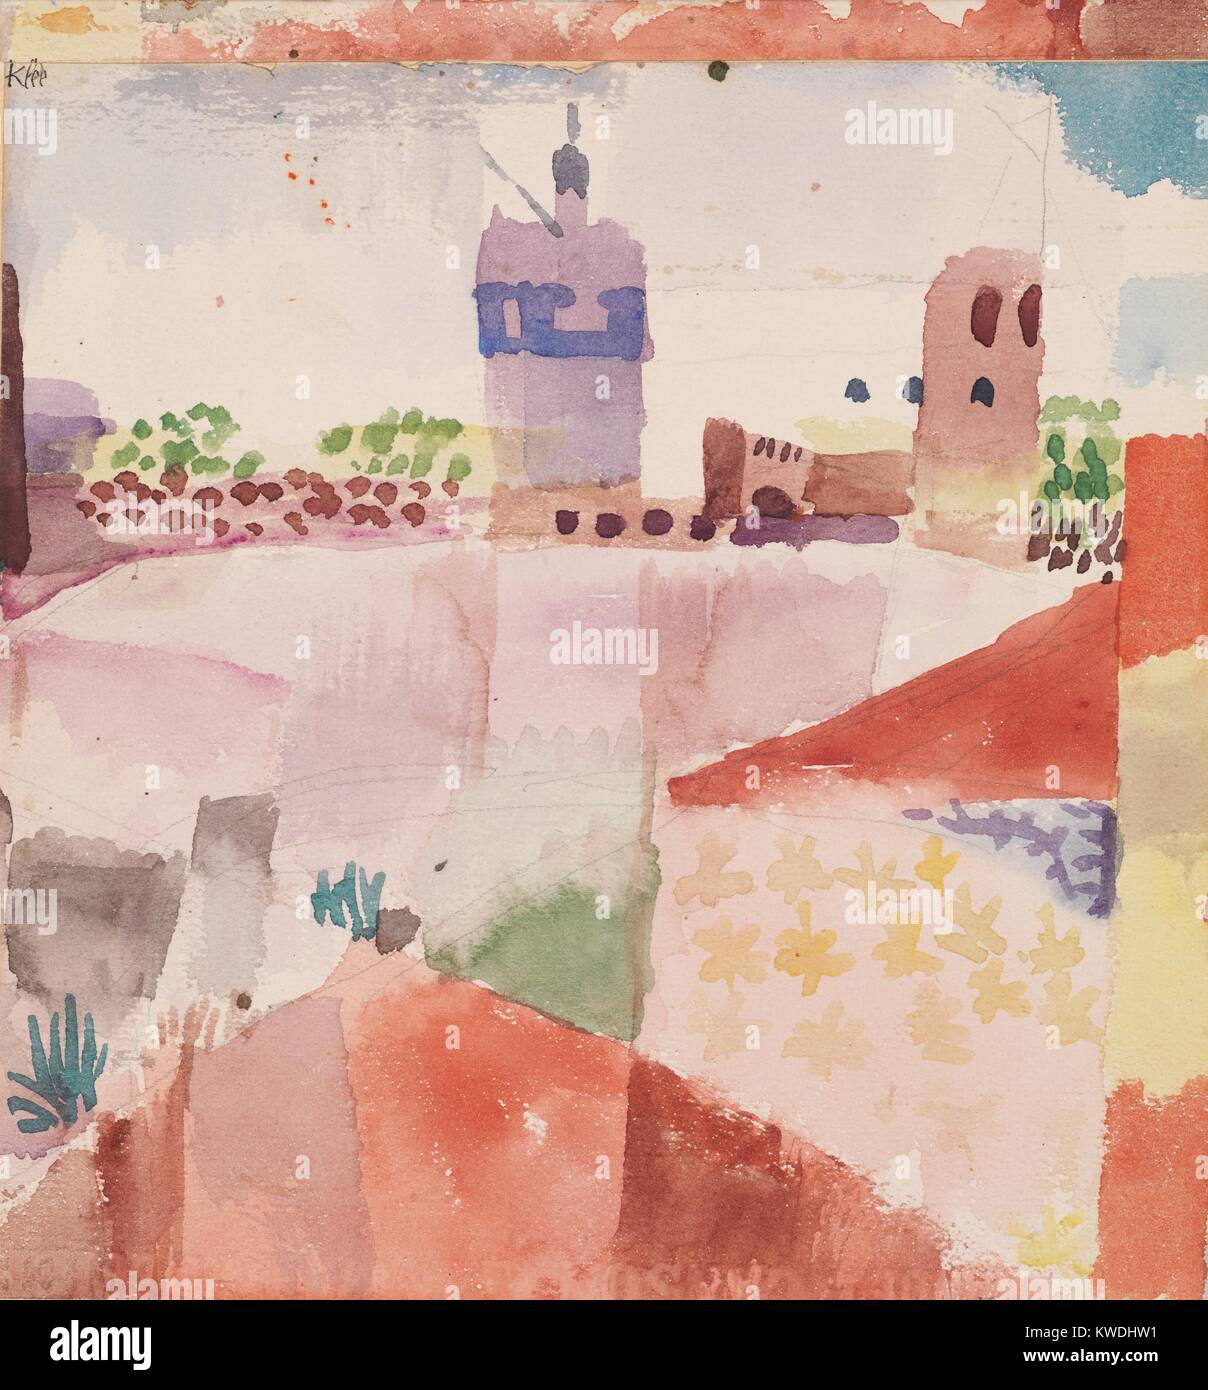 HAMMAMET avec sa mosquée, par Paul Klee, 1914 Swiss le dessin, l'aquarelle  et graphite sur papier. La ville côtière de Hammamet et sa mosquée  distinctif ont été peintes par Klee après sa